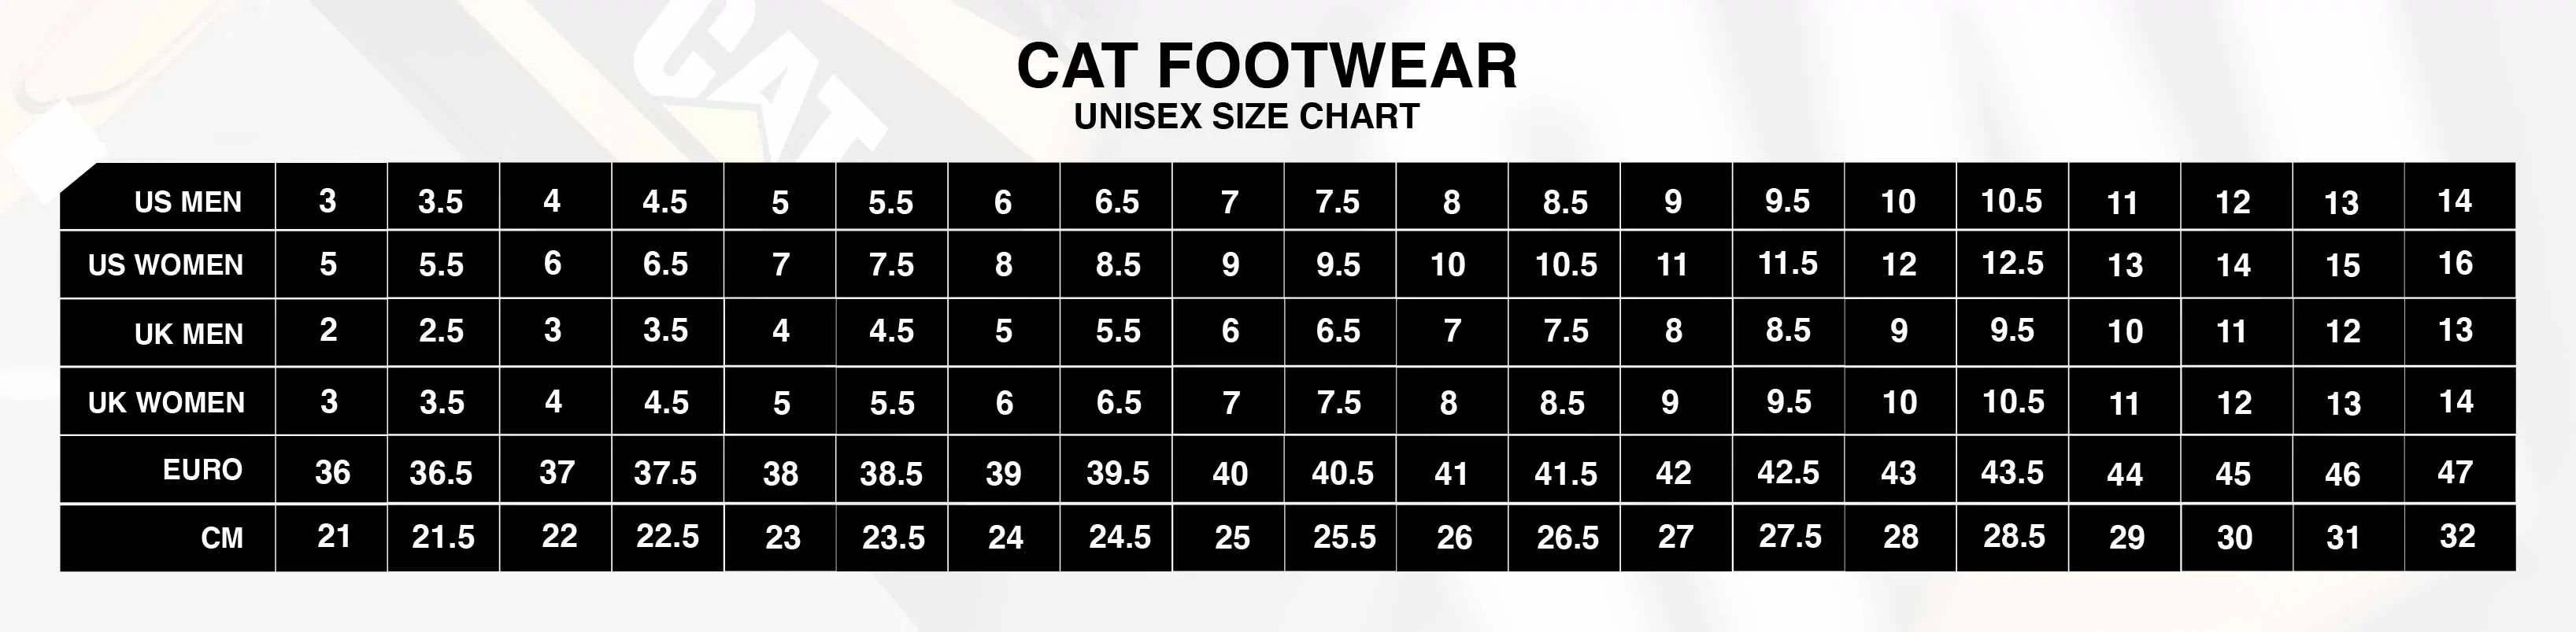 CAT - Unisex Size Chart